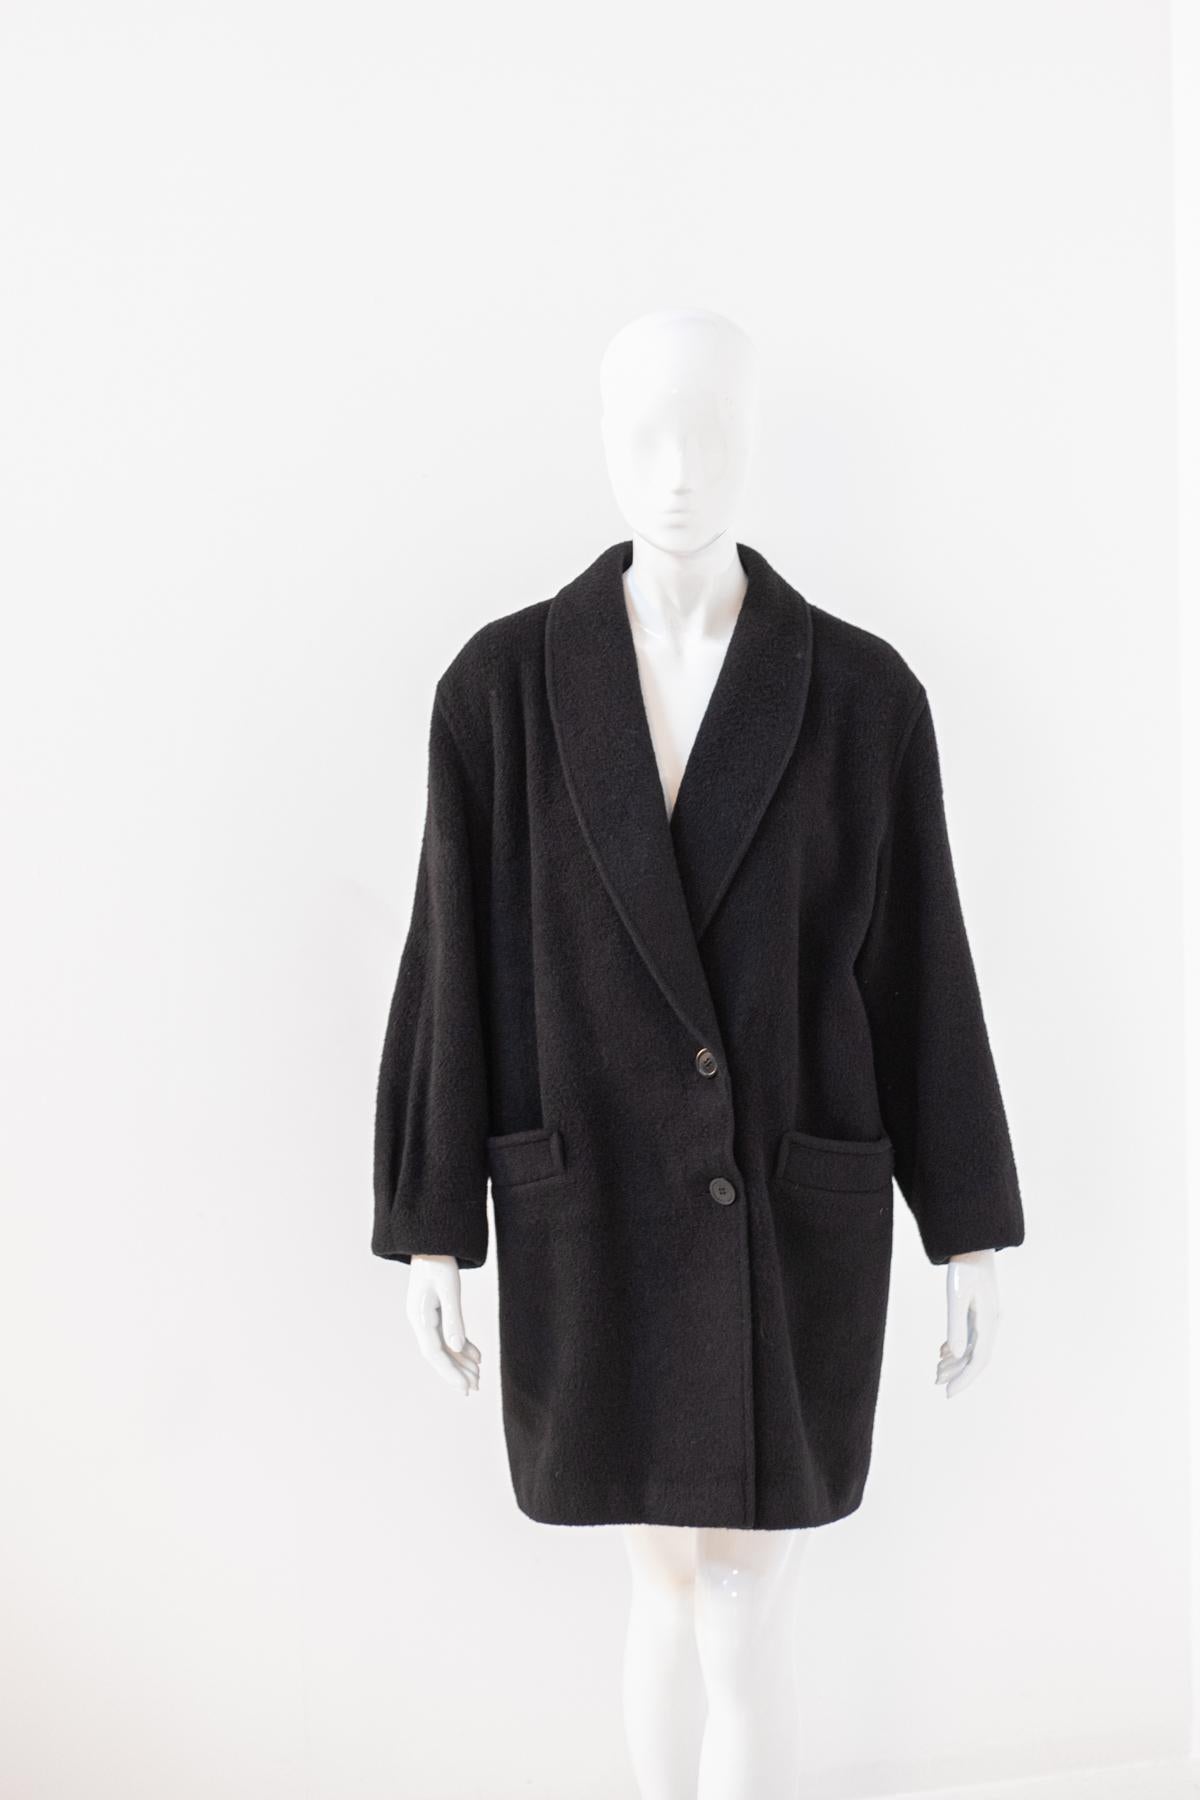 Alpaca Vintage Black Wool Coat For Sale 1